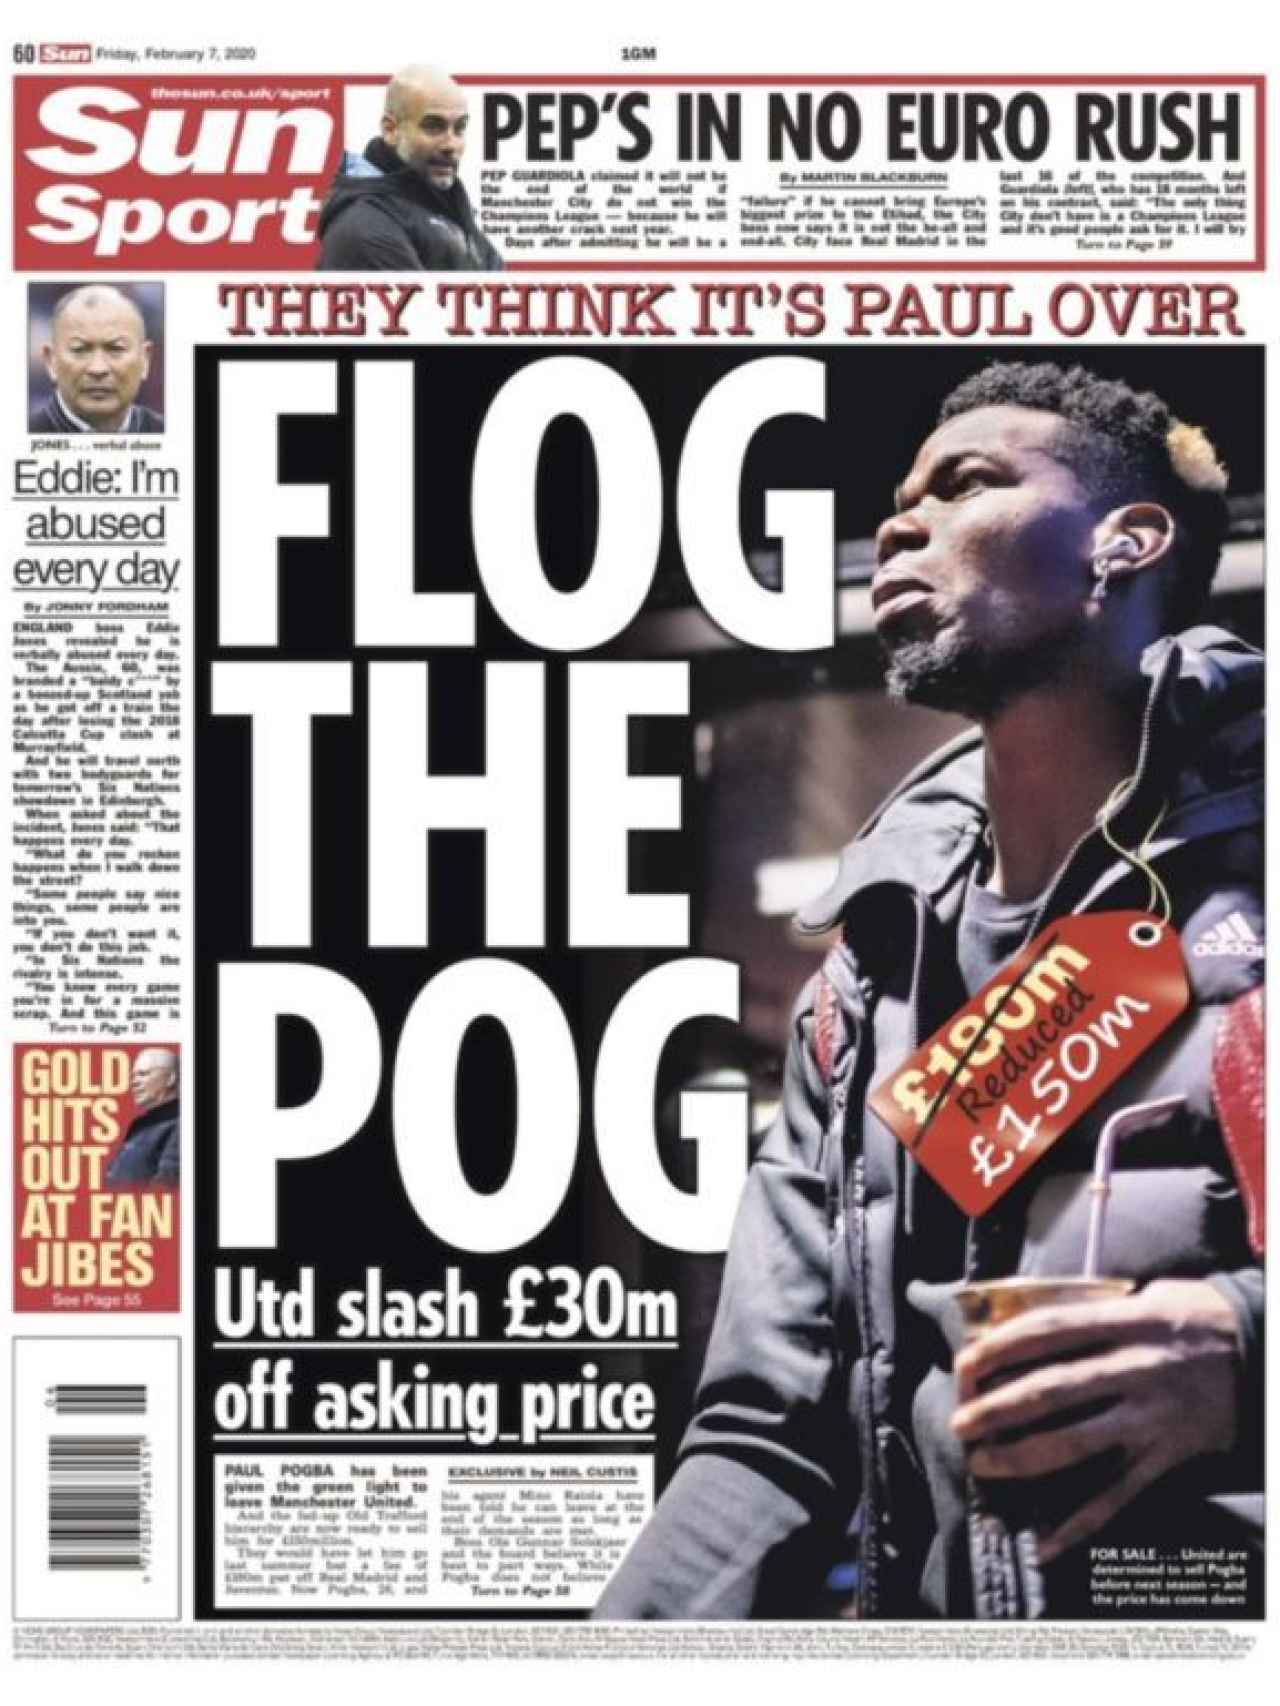 La portada del viernes 7 de febrero del diario inglés The Sun en su versión deportiva